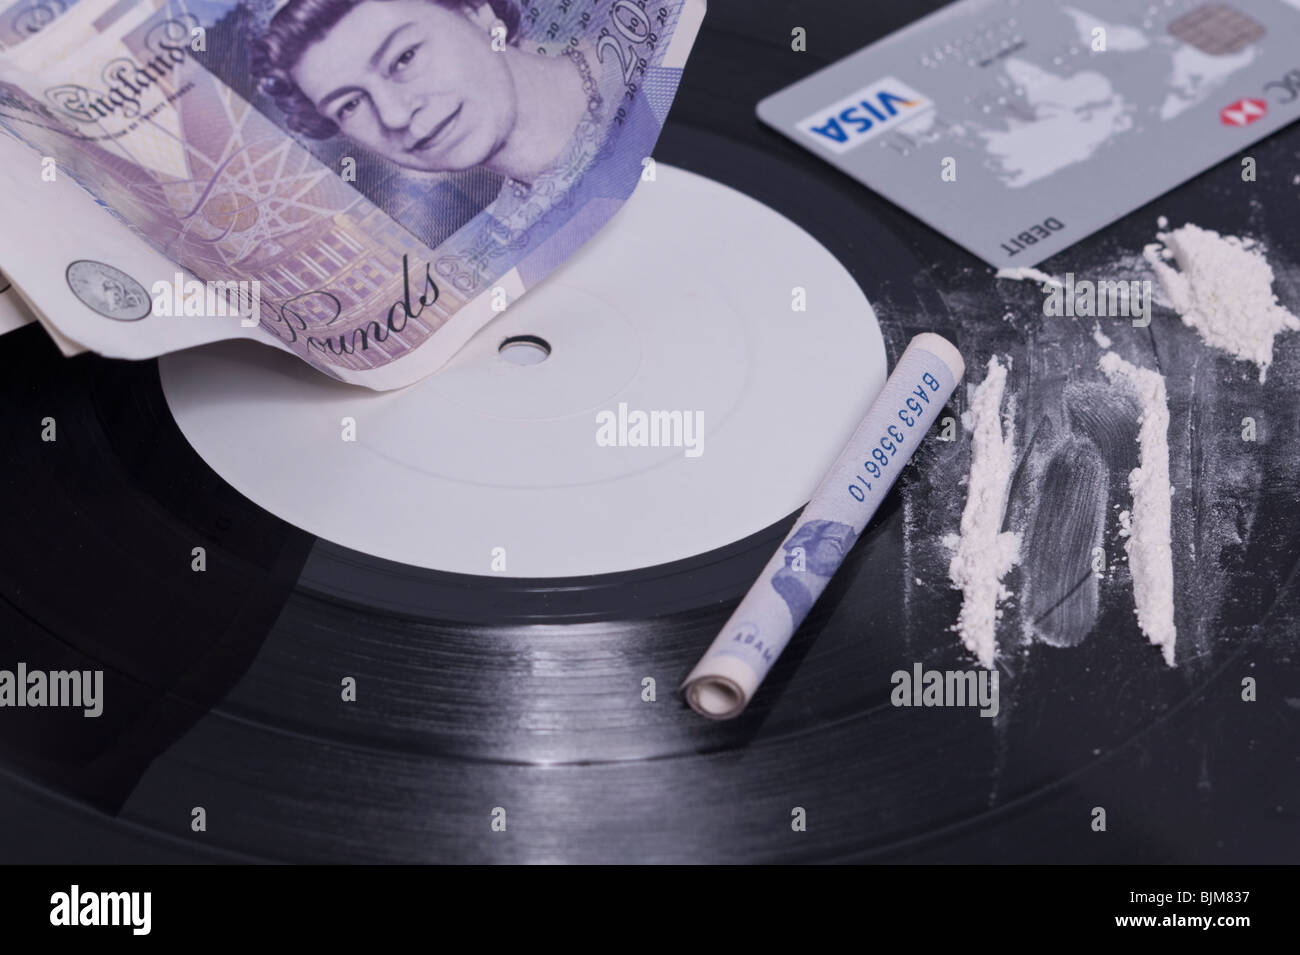 Una foto che mostra il consumo di cocaina nel settore della musica con linee di polvere bianca su una etichetta bianca e record di contanti nel Regno Unito Foto Stock